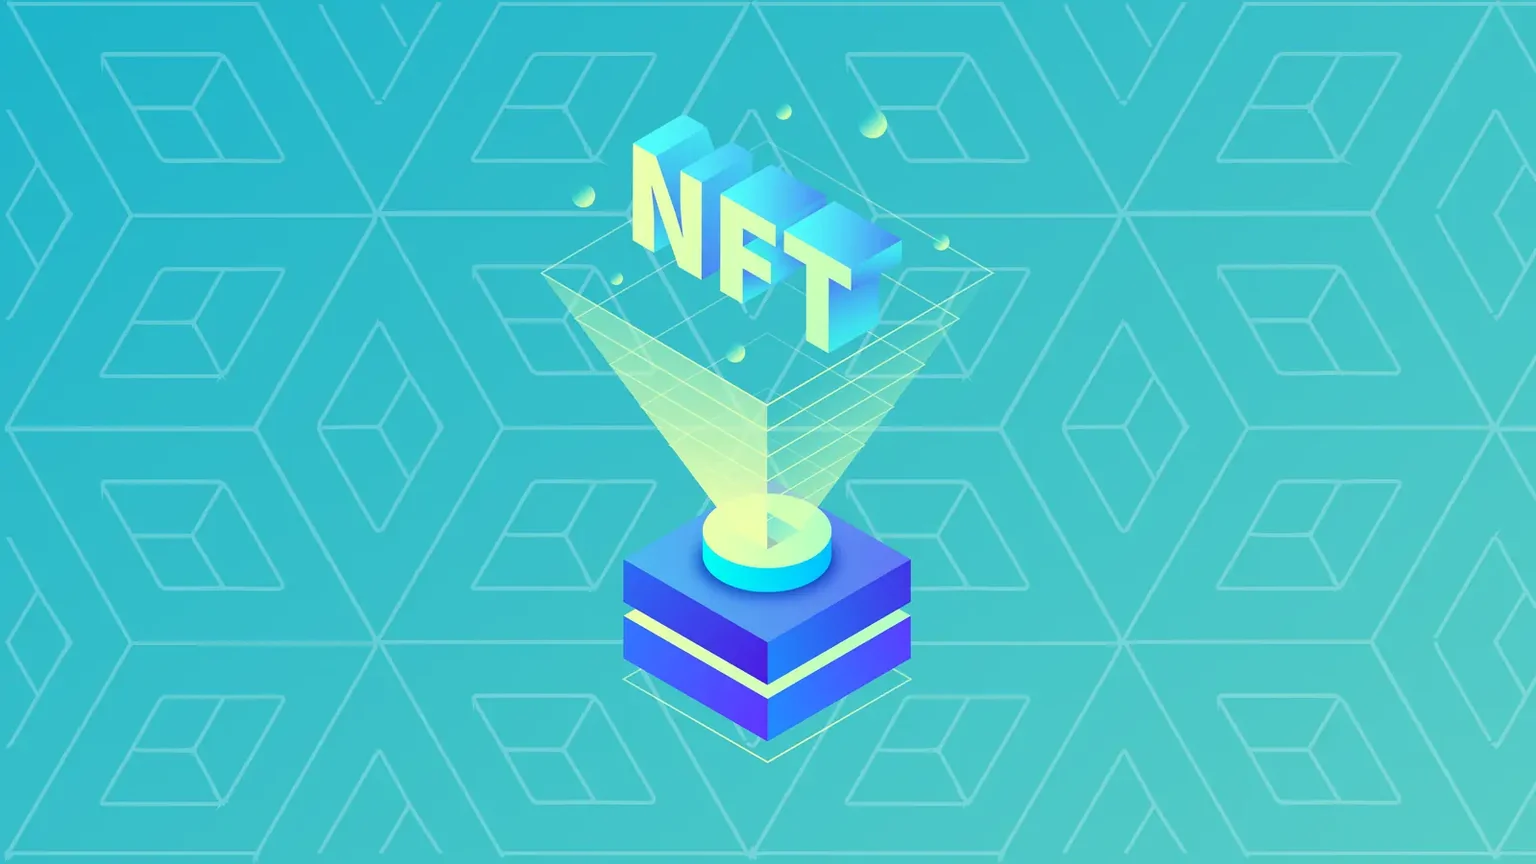 Los NFT, o tokens no fungibles, son activos digitales criptográficamente únicos. Imagen: Decrypt